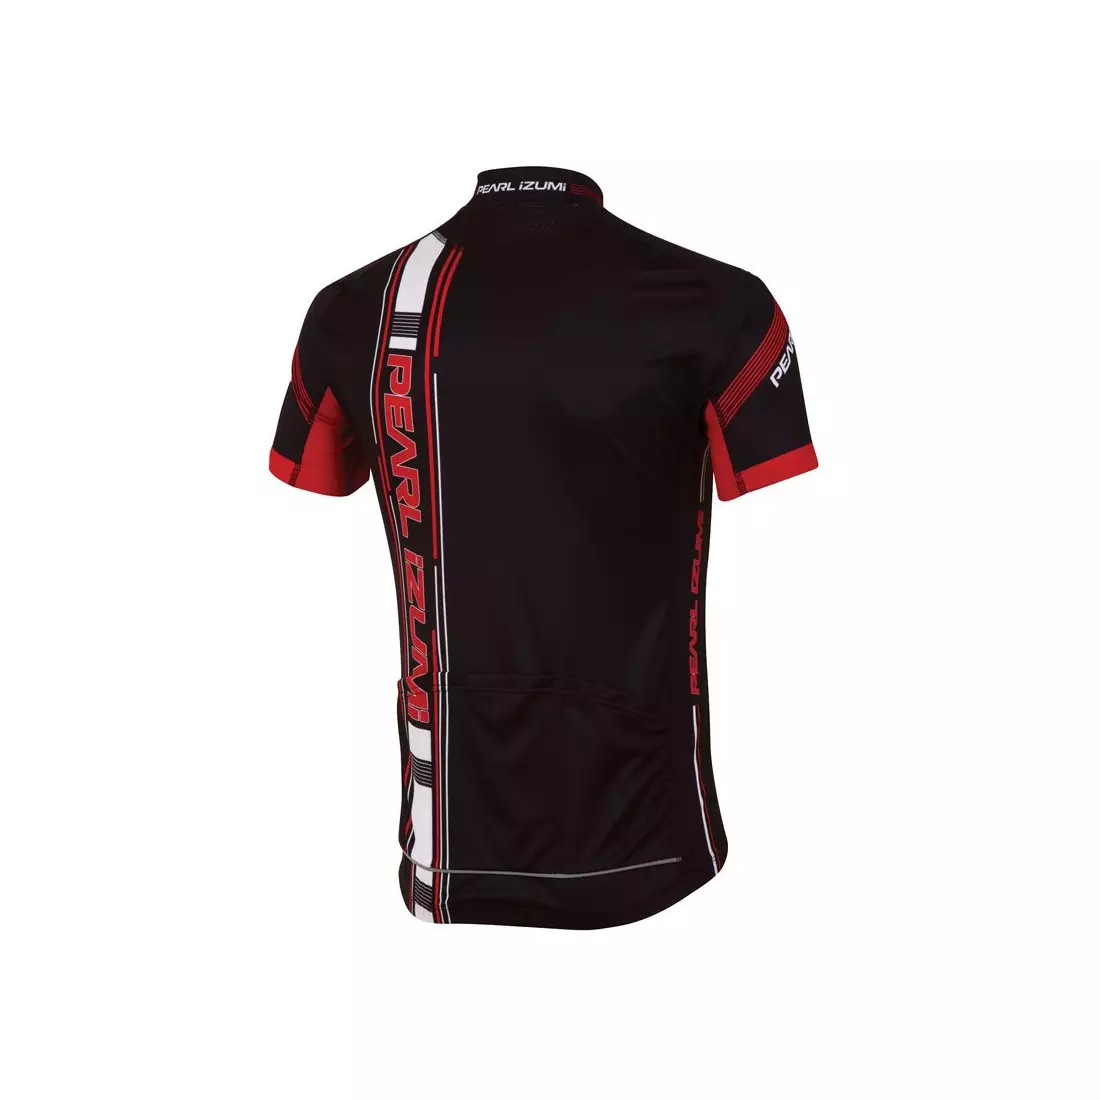 PEARL IZUMI - 11121371-4IR ELITE LTD - pánsky cyklistický dres, farba: Čierno-červená